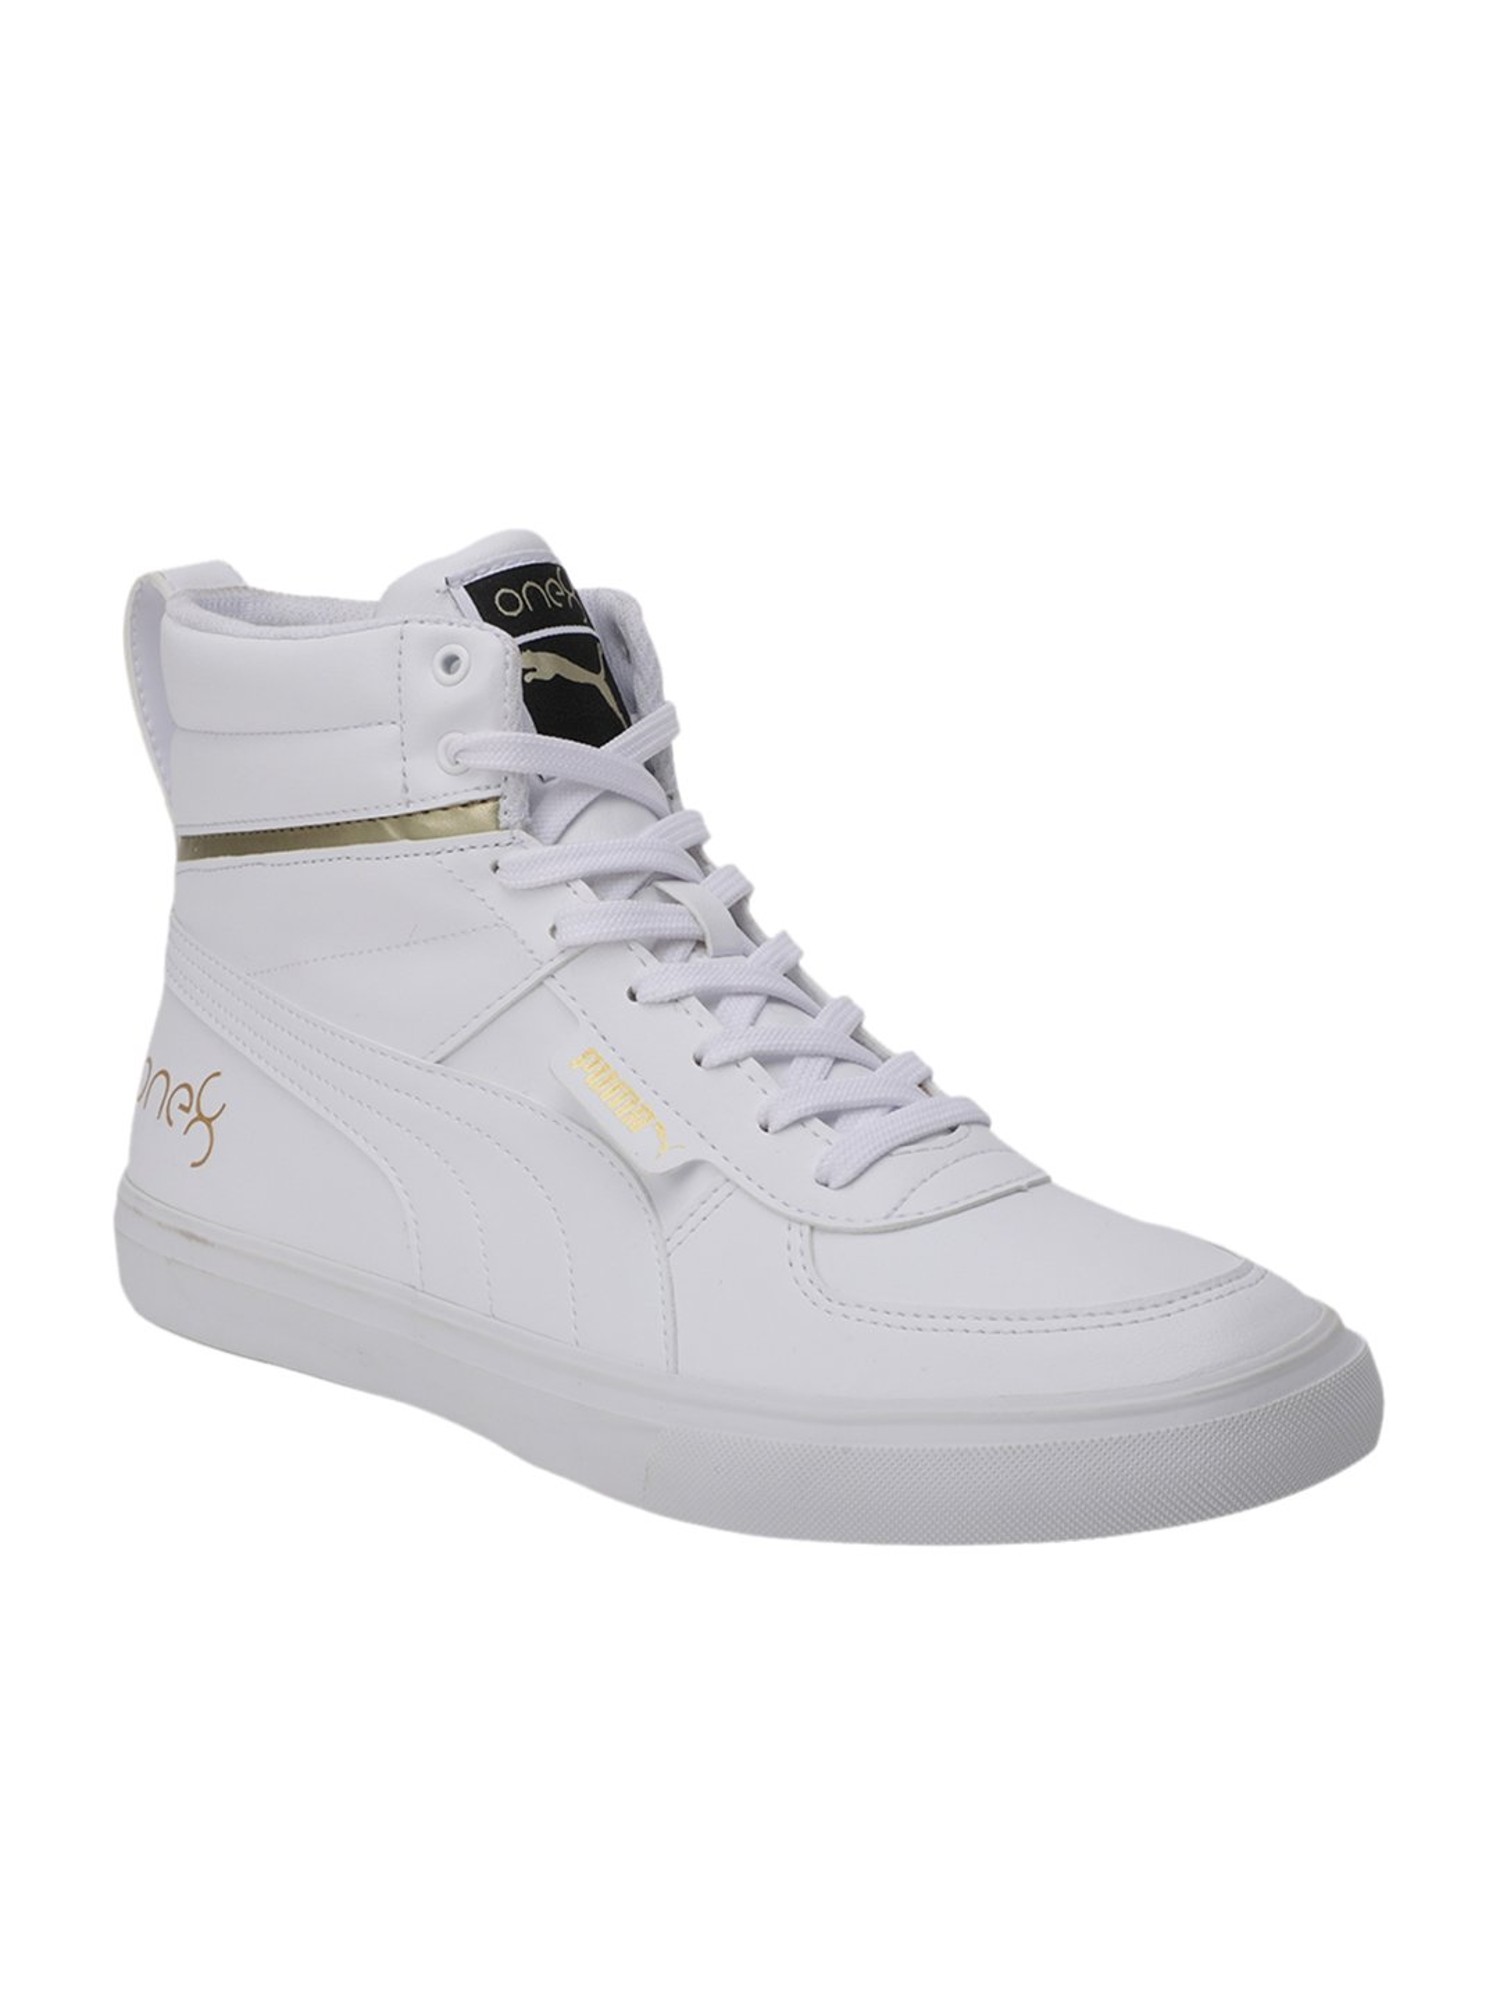 Buy Puma One8 Smash V2 White Sneakers for Men at Best Price @ Tata CLiQ